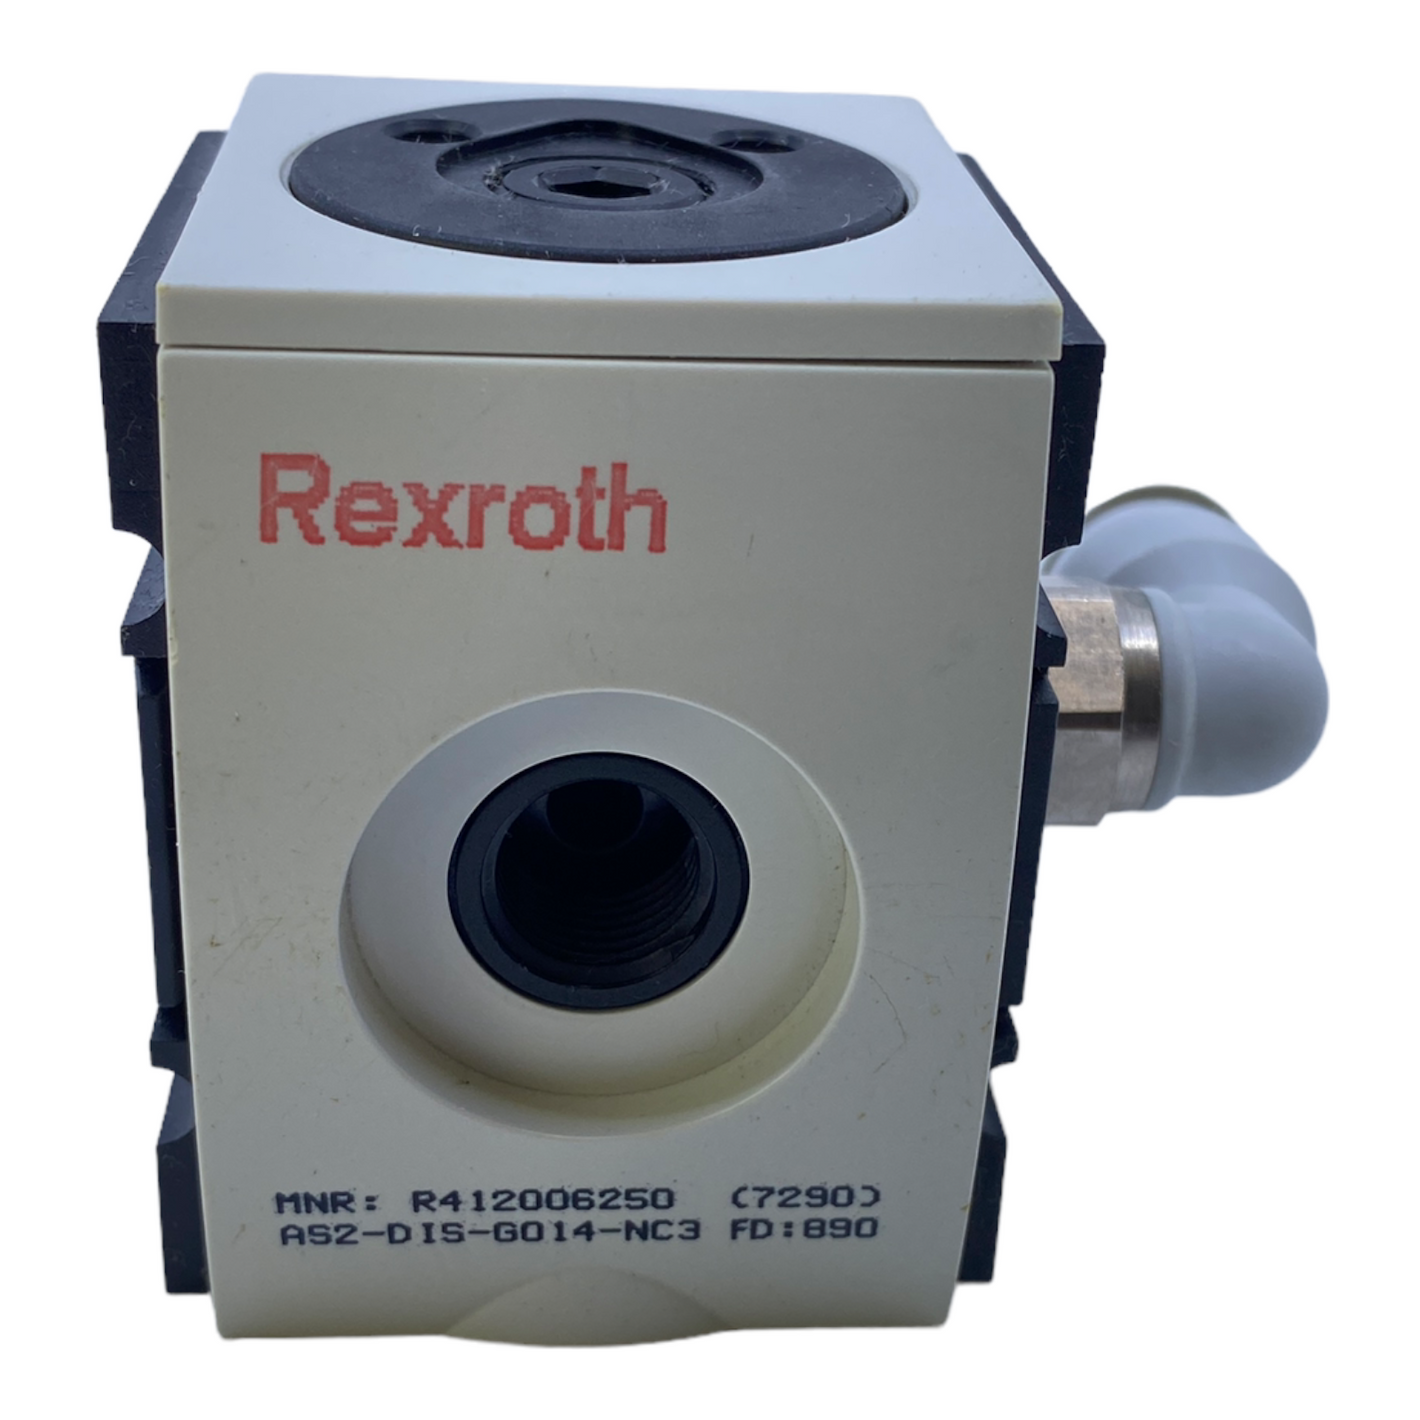 Rexroth R412006250 Pneumatikverteiler AS2-DIS-G014-NC3